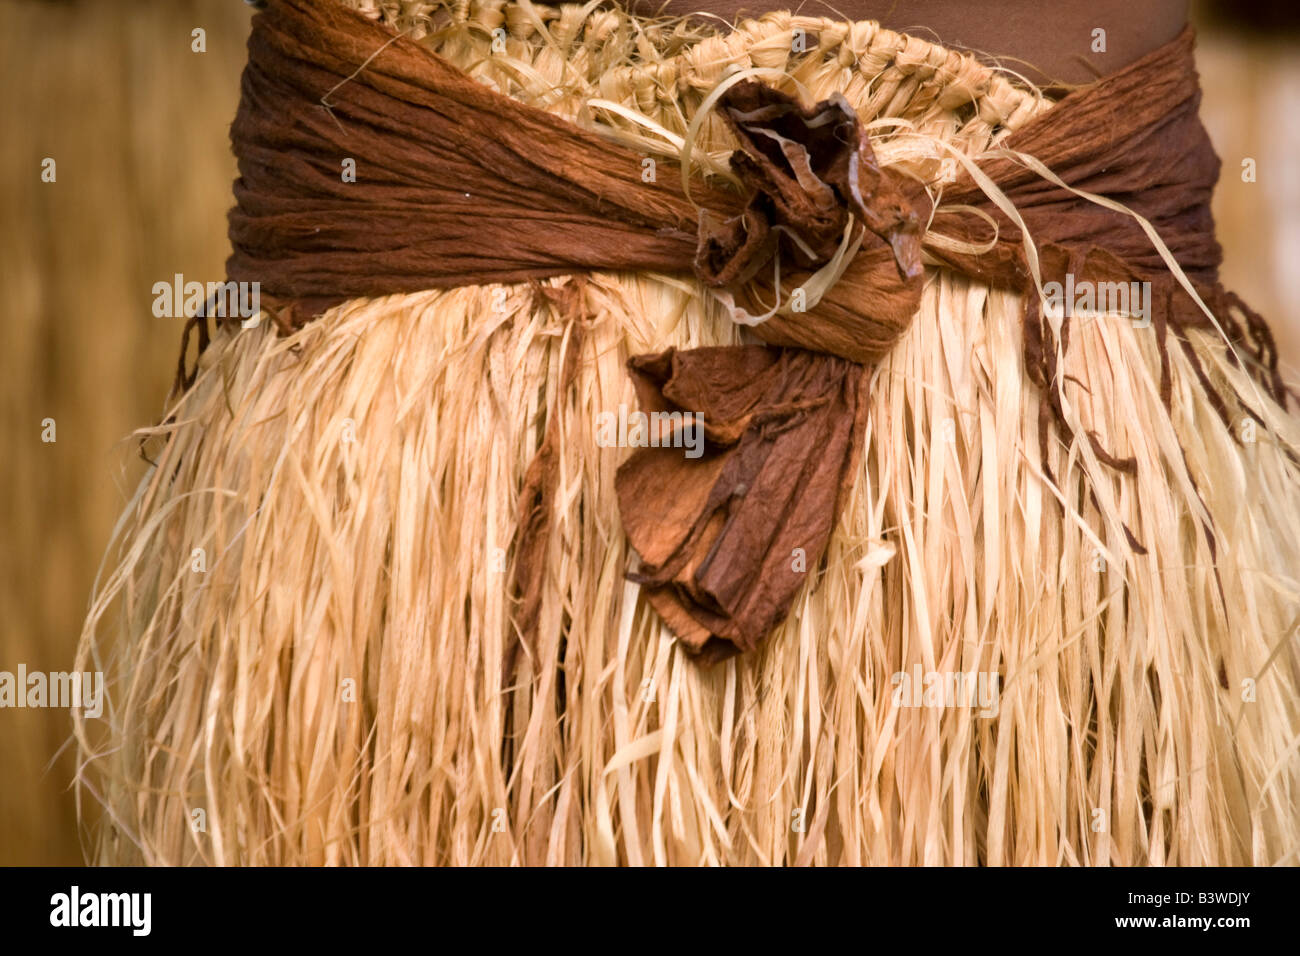 Océanie, Fidji, Viti Levu, Viseise. Détail d'une herbe traditionnelle liée avec le tissu de la jupe. Banque D'Images